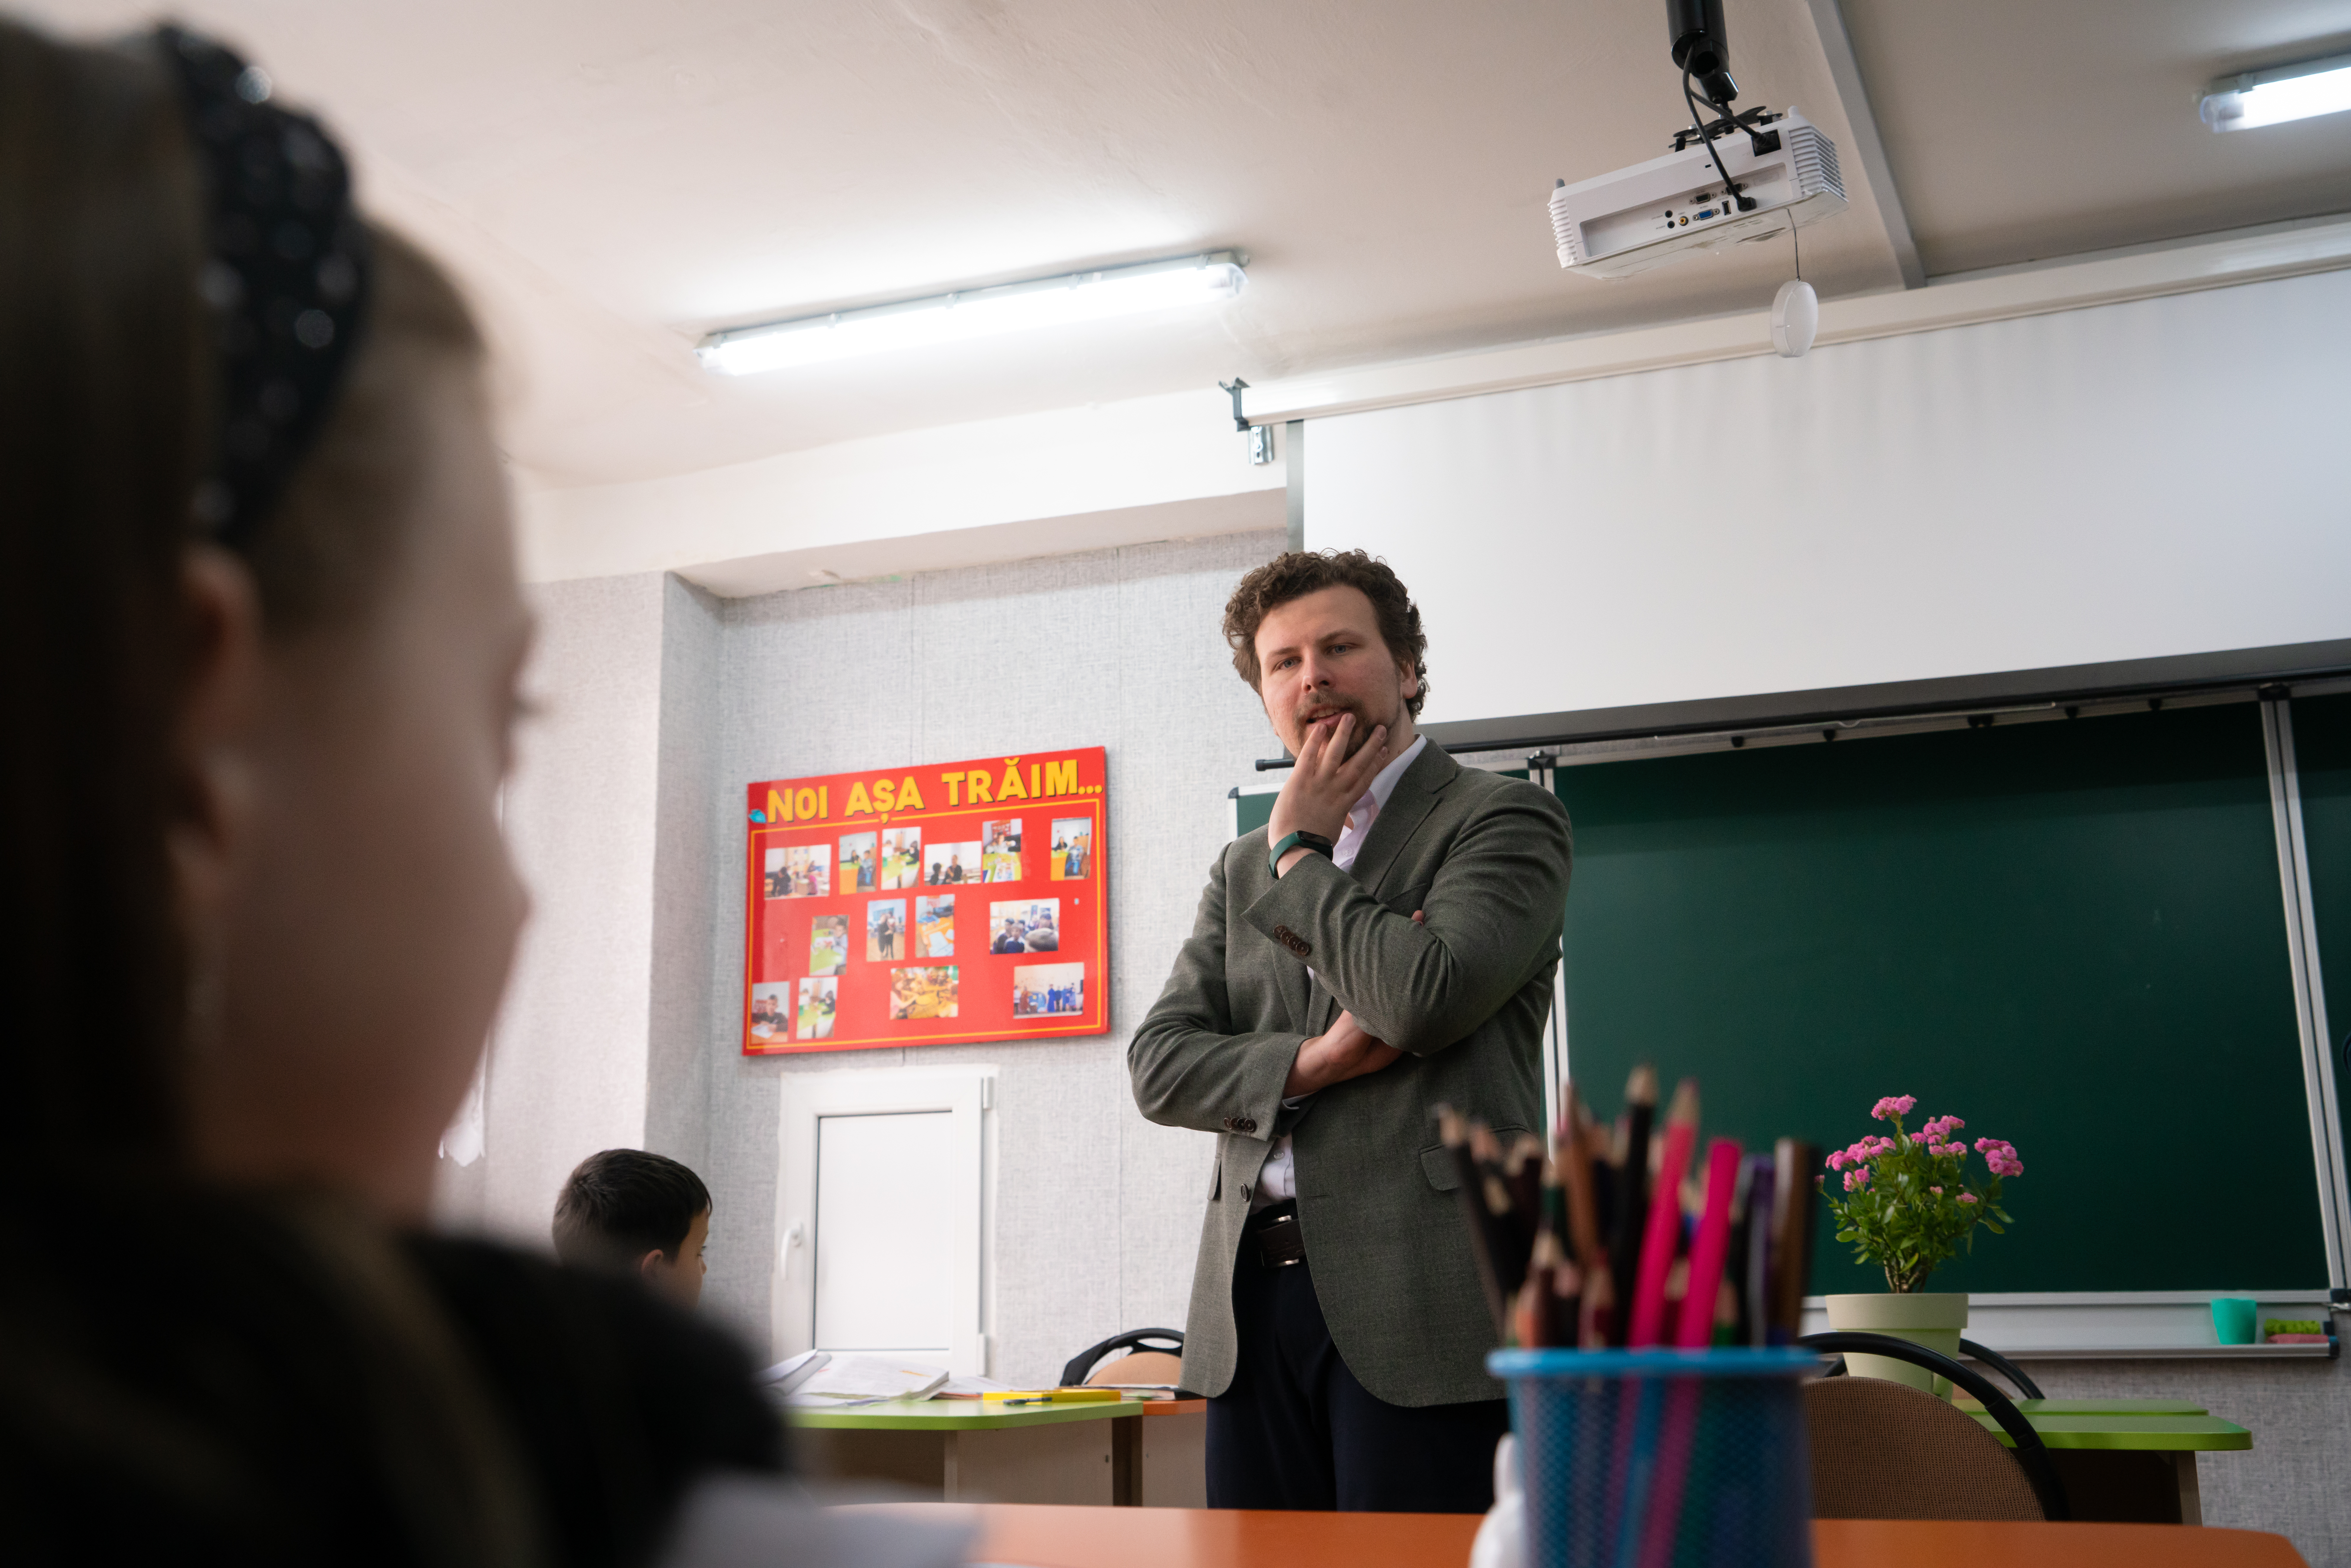 Absorbante gratis în patru școli din Moldova. Ministrul Educației, prezent la lansarea inițiativei